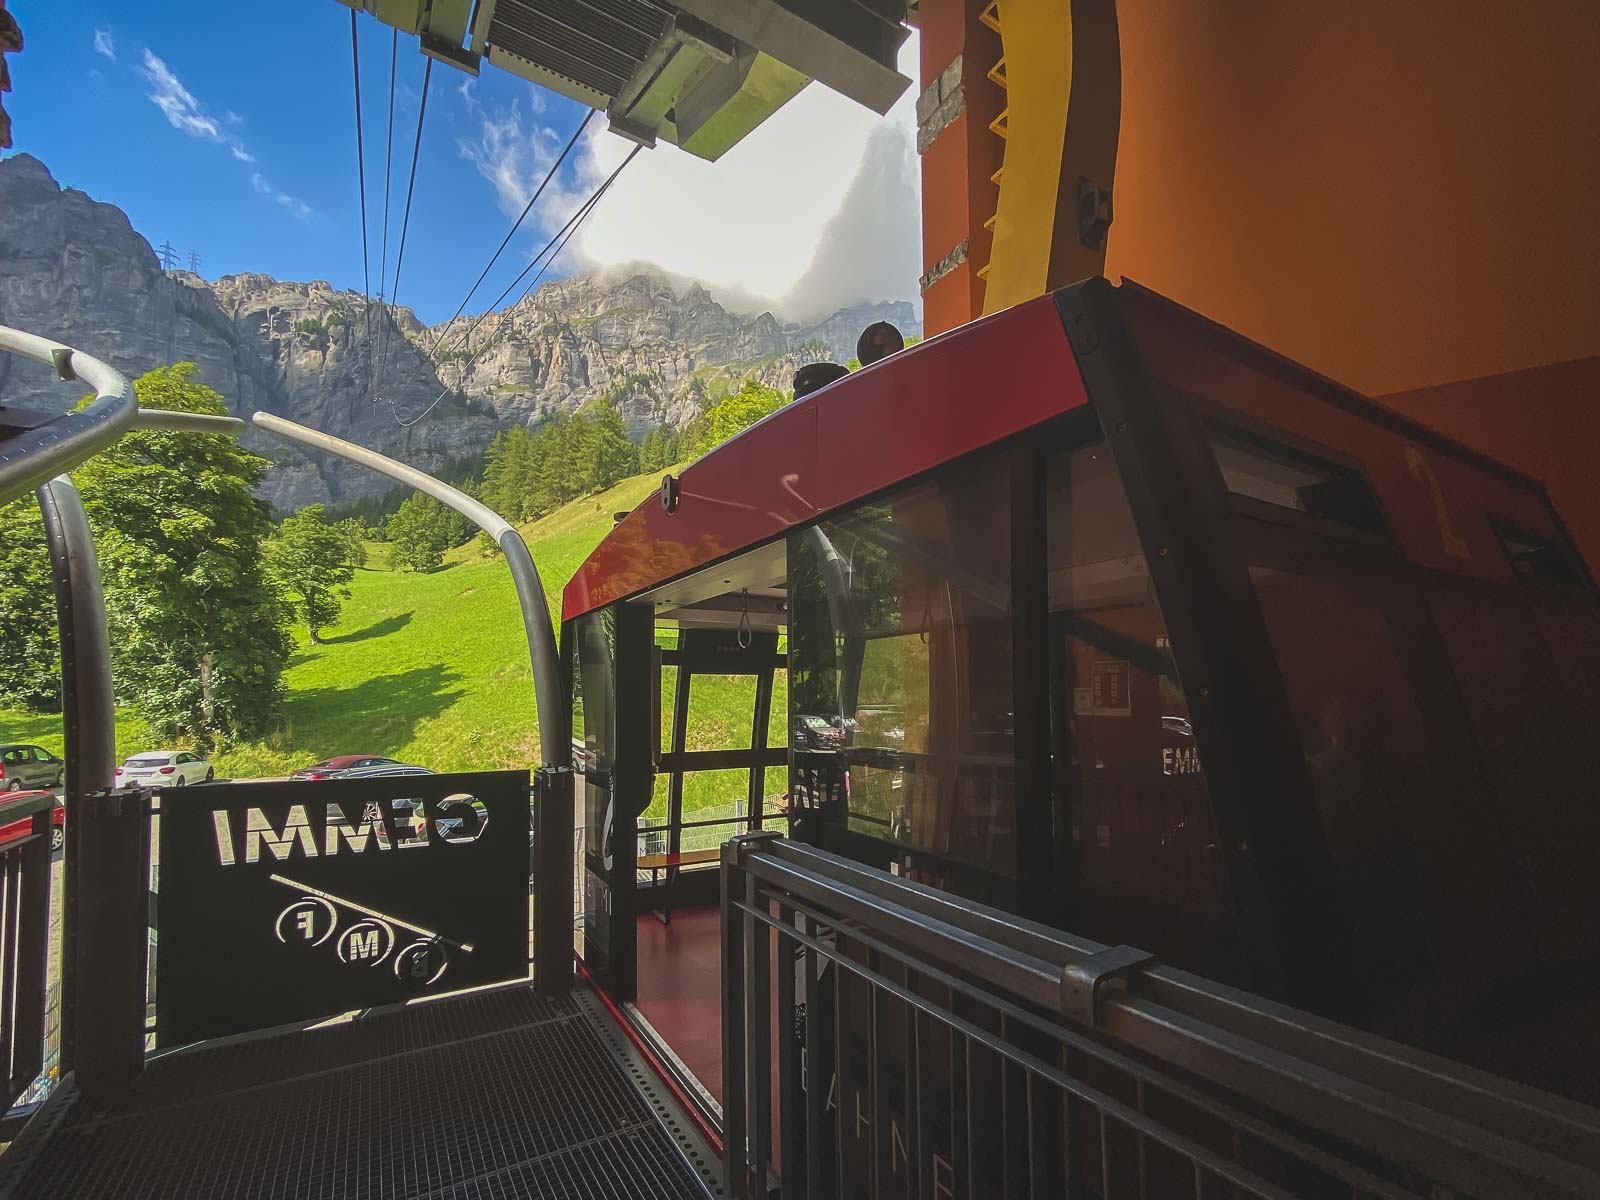 Gemmi Cable Car in Leukerbad Switzerland